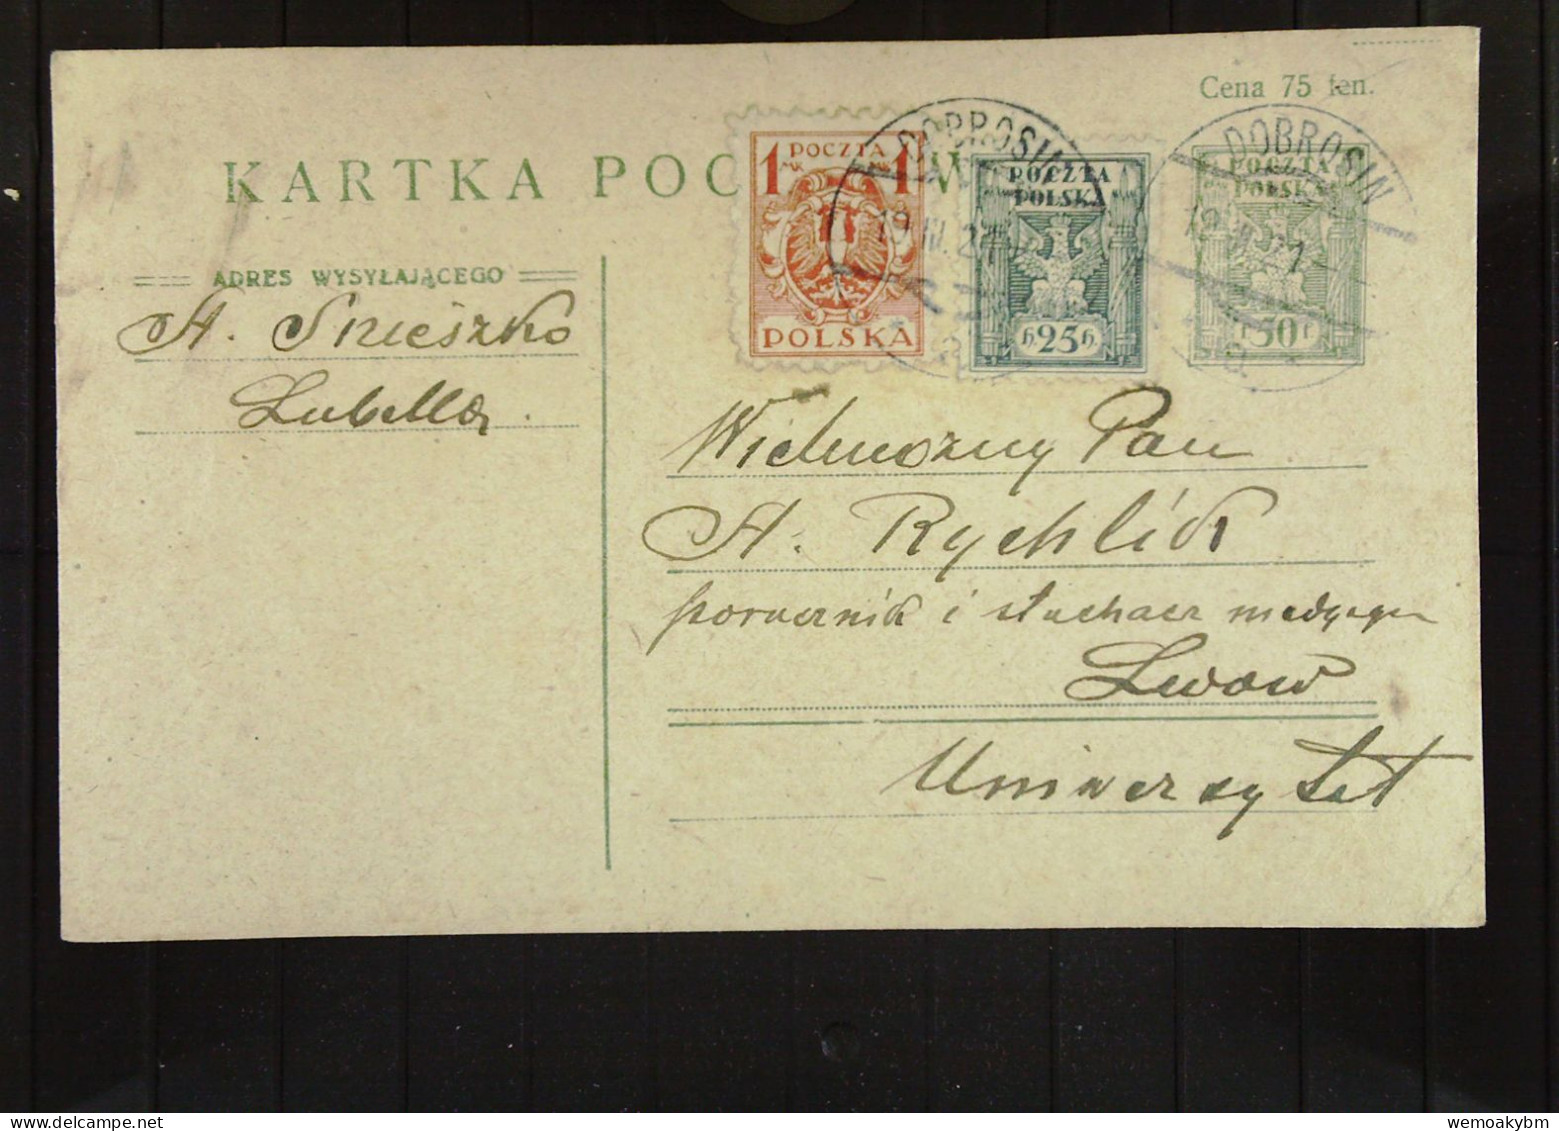 Polen: Ganzsachen-Postkarte Mit POLSKA 50 F Und Zusatz-Marken 25 H Und 1 Mk Vom 19.3.1921 Aus DOBROSIN Nach Lwow - Covers & Documents